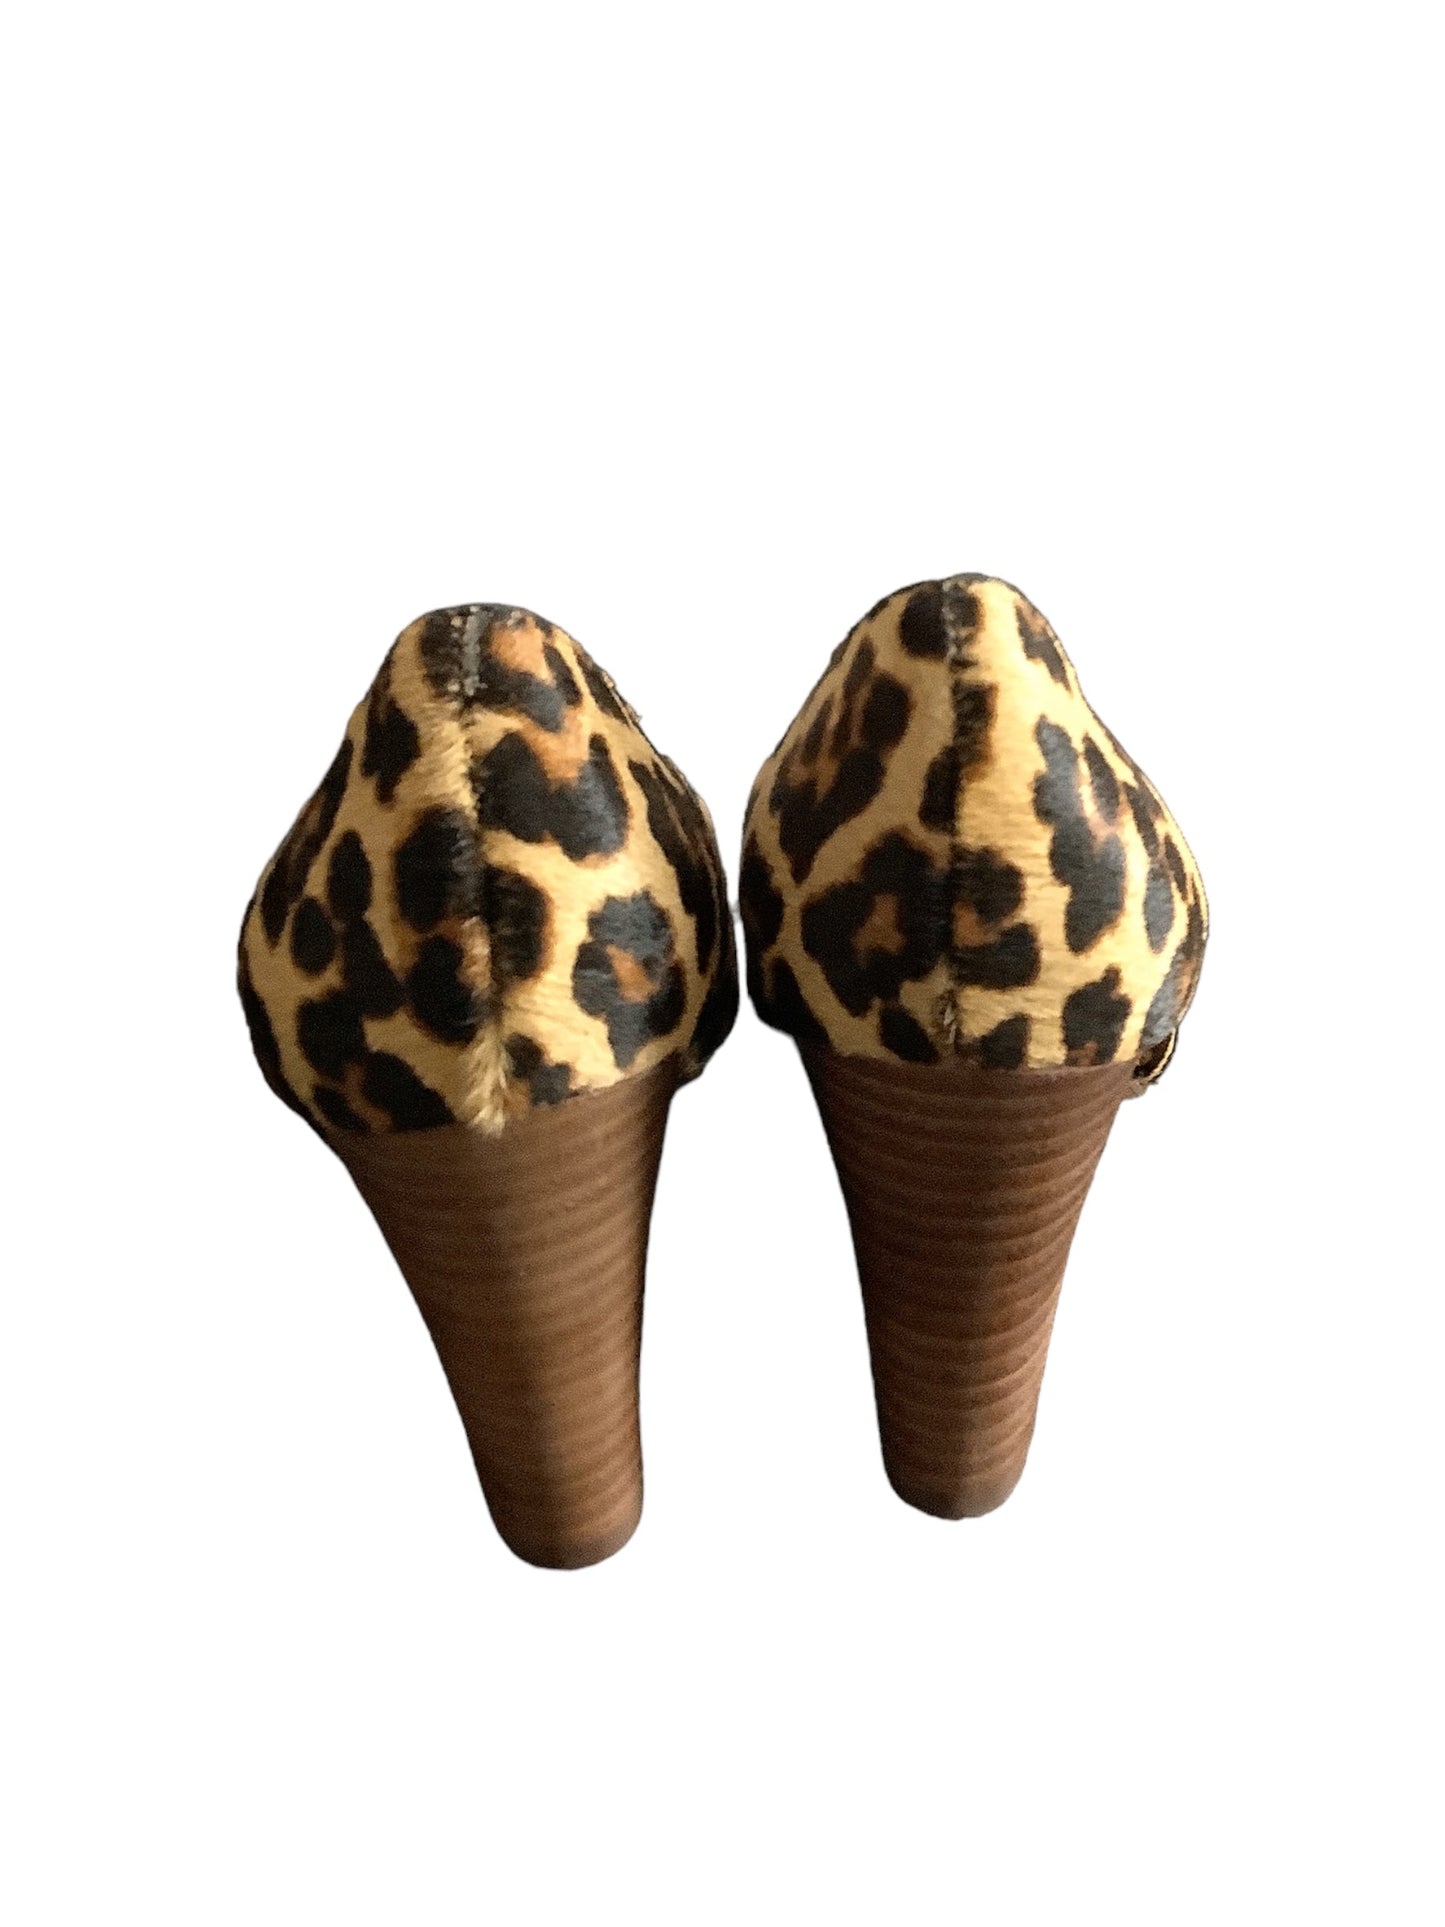 Animal Print Shoes Heels Block Crown Vintage, Size 6.5